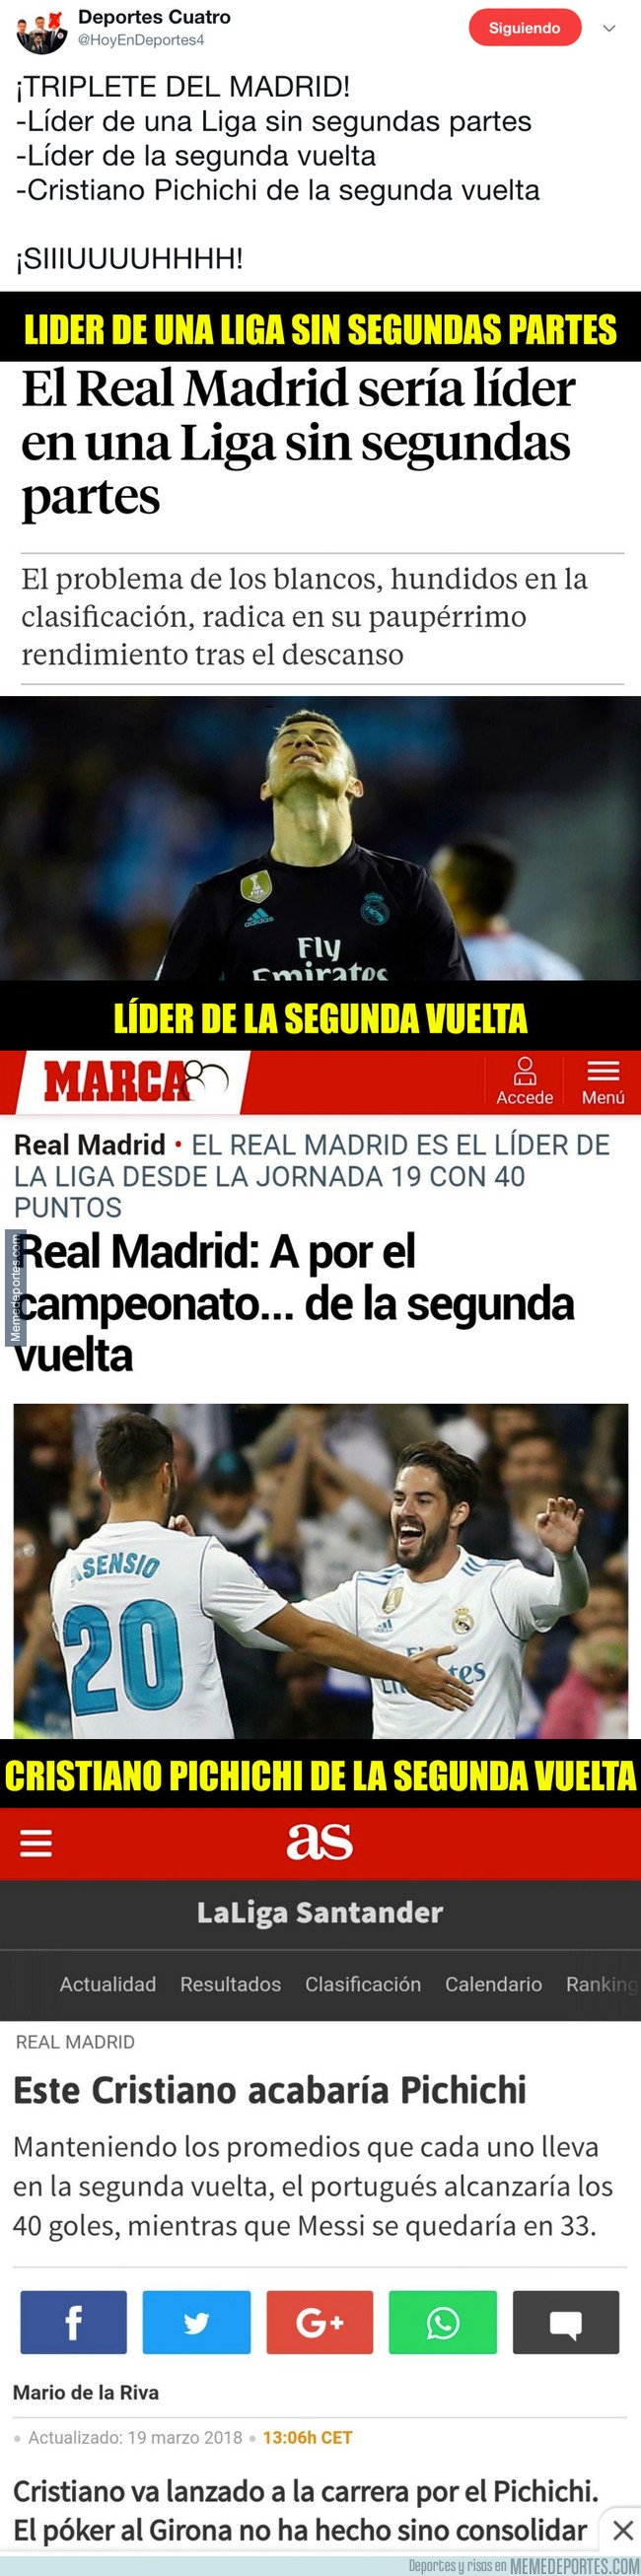 1034781 - La prensa madrileña se inventa estos títulos para que el Madrid gane algo esta Liga. Vía @HoyEnDeportes4